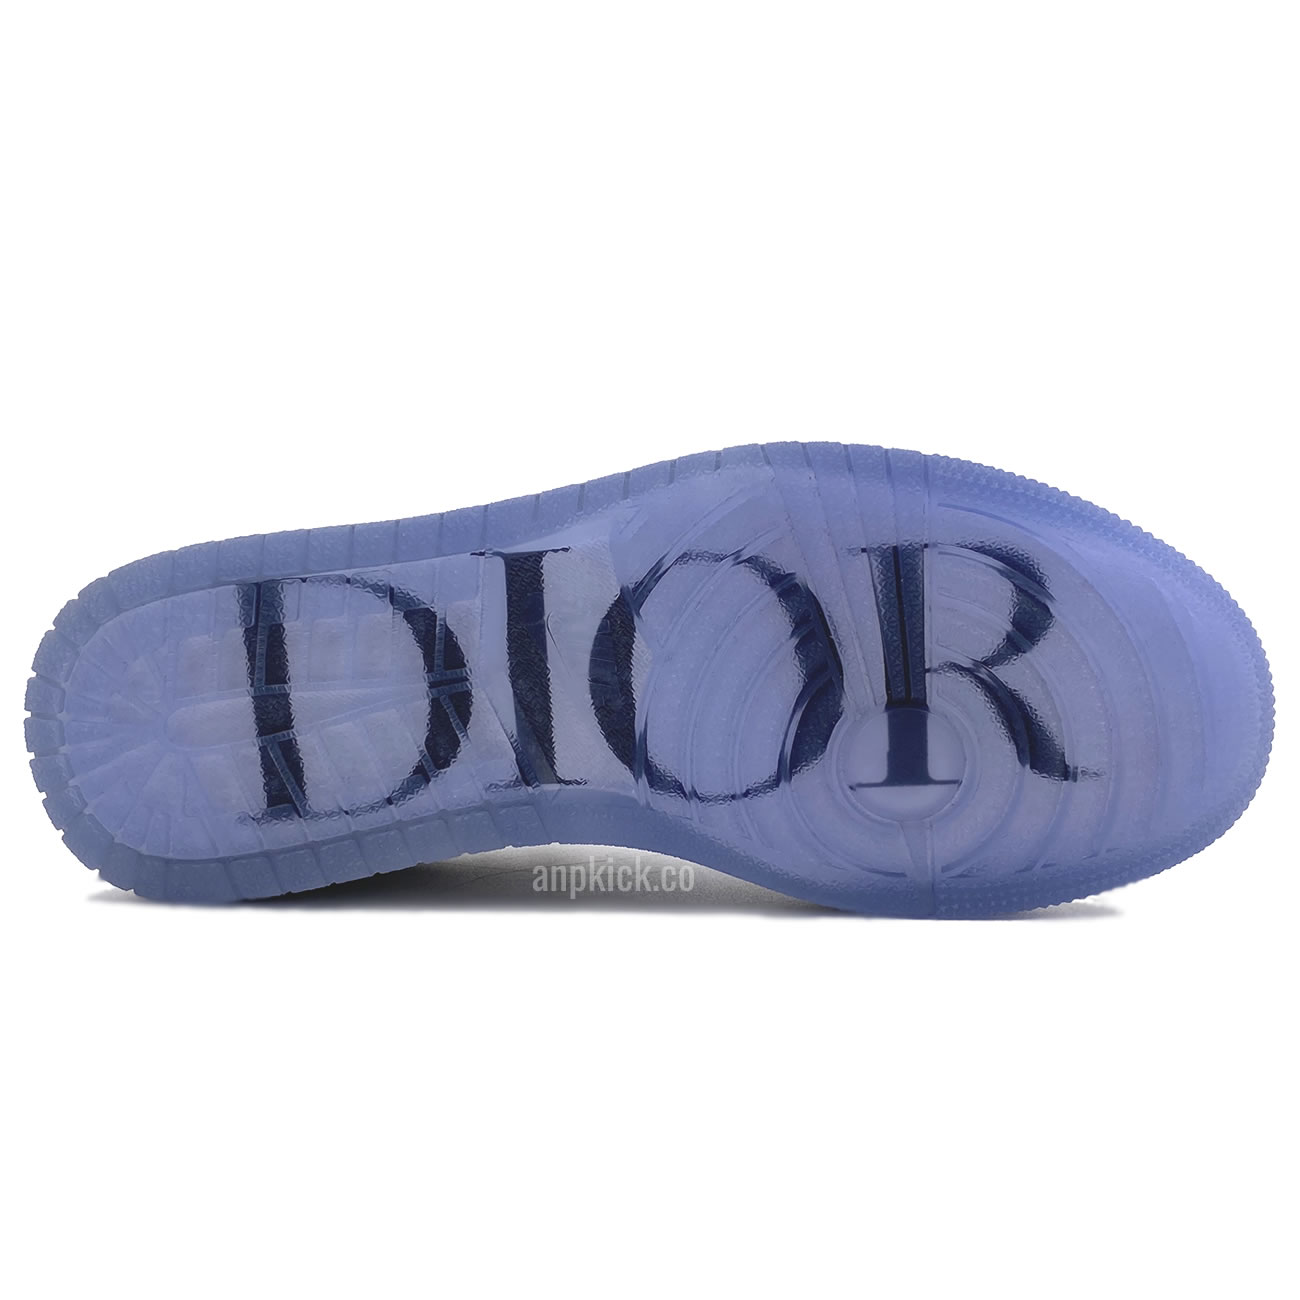 Dior Air Jordan 1 Low Release Date Cn8608 002 (8) - newkick.org